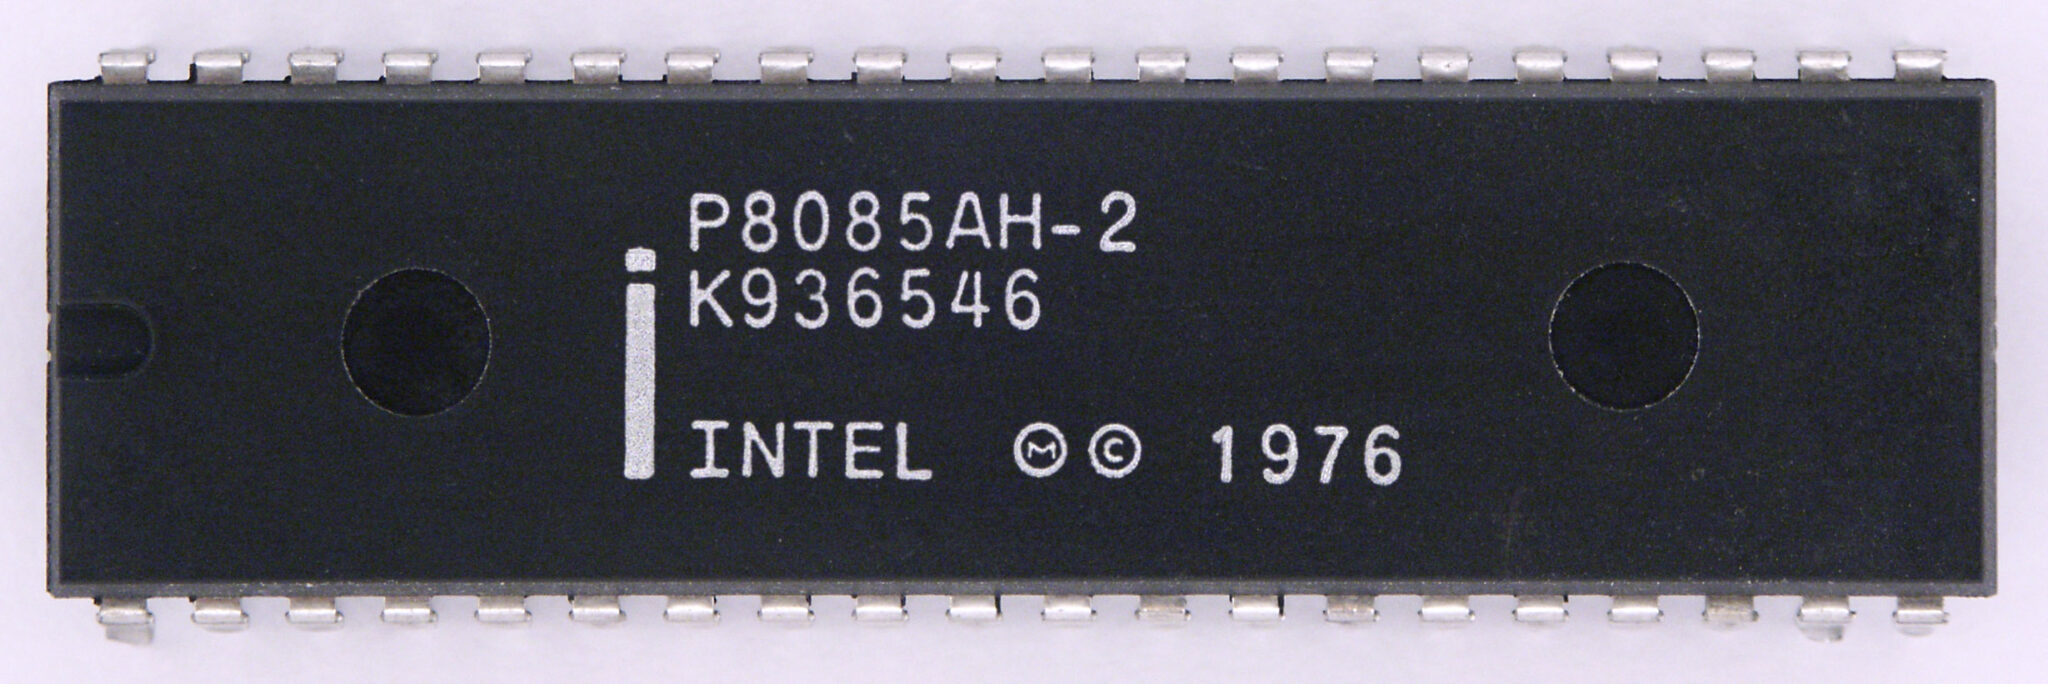 8085 microprocessor